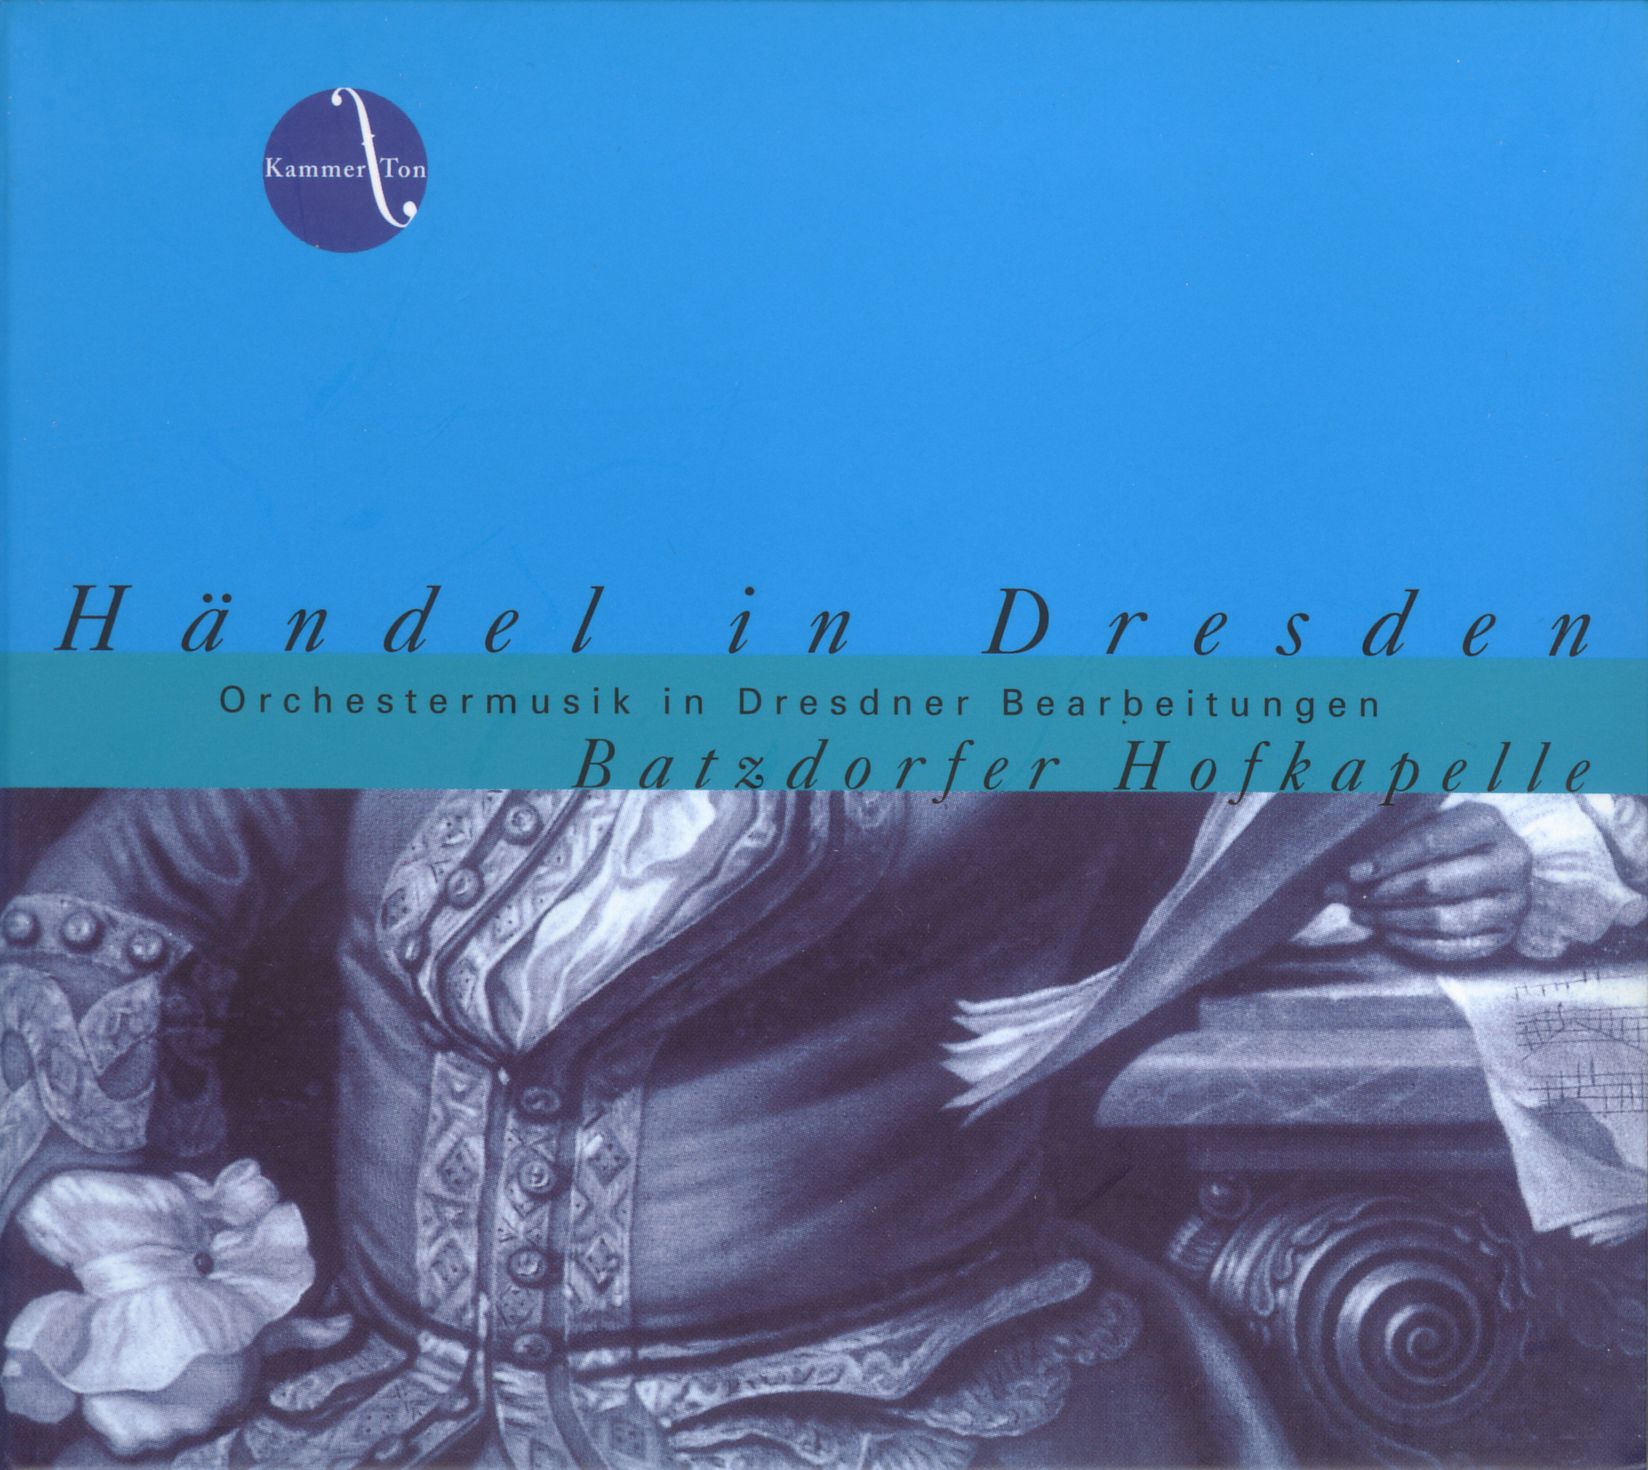 Händel in Dresden - Orchestermusik in Dresdner Bearbeitungen